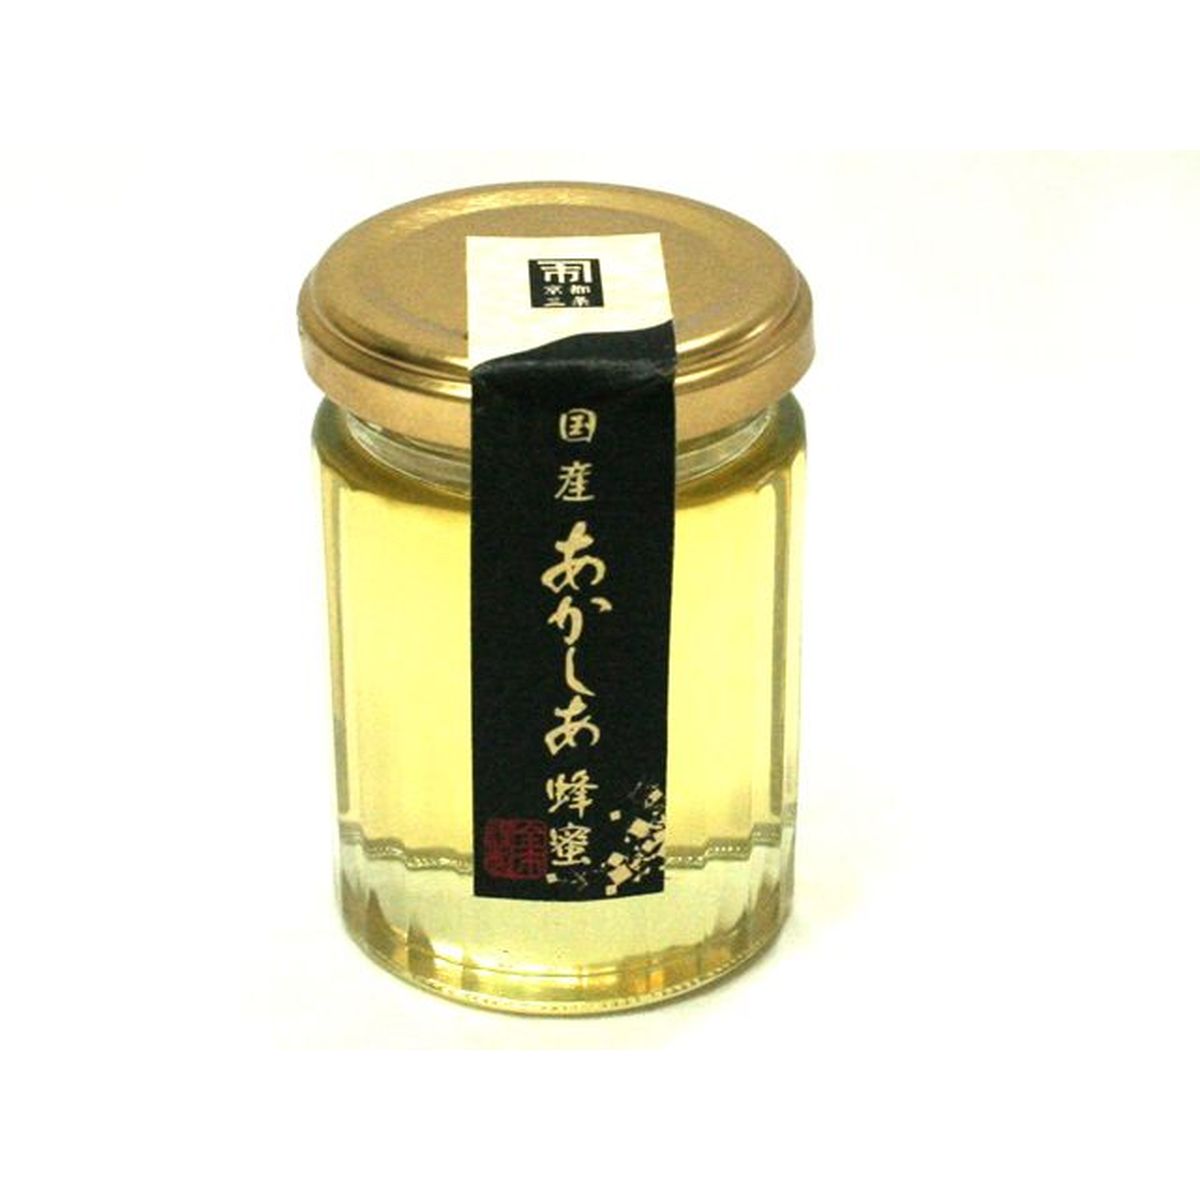 【12個入リ】金市商店 国産 アカシア蜂蜜 130g